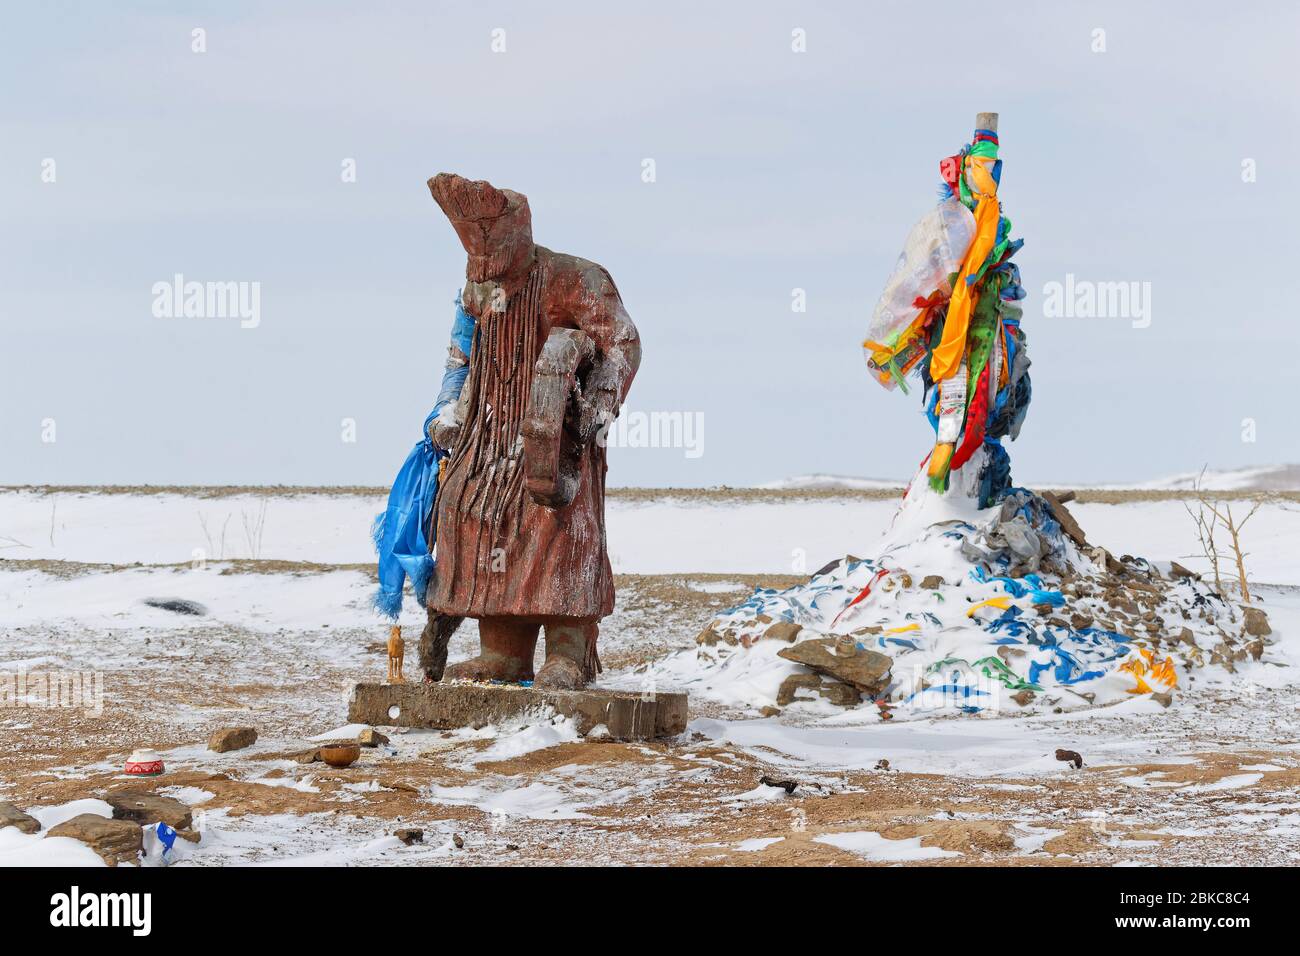 Sculpture de chaman et ovoo. Ovoo sont des tas de pierre sacrées utilisés comme autels ou sanctuaires dans les pratiques religieuses folkloriques mongoles. Banque D'Images